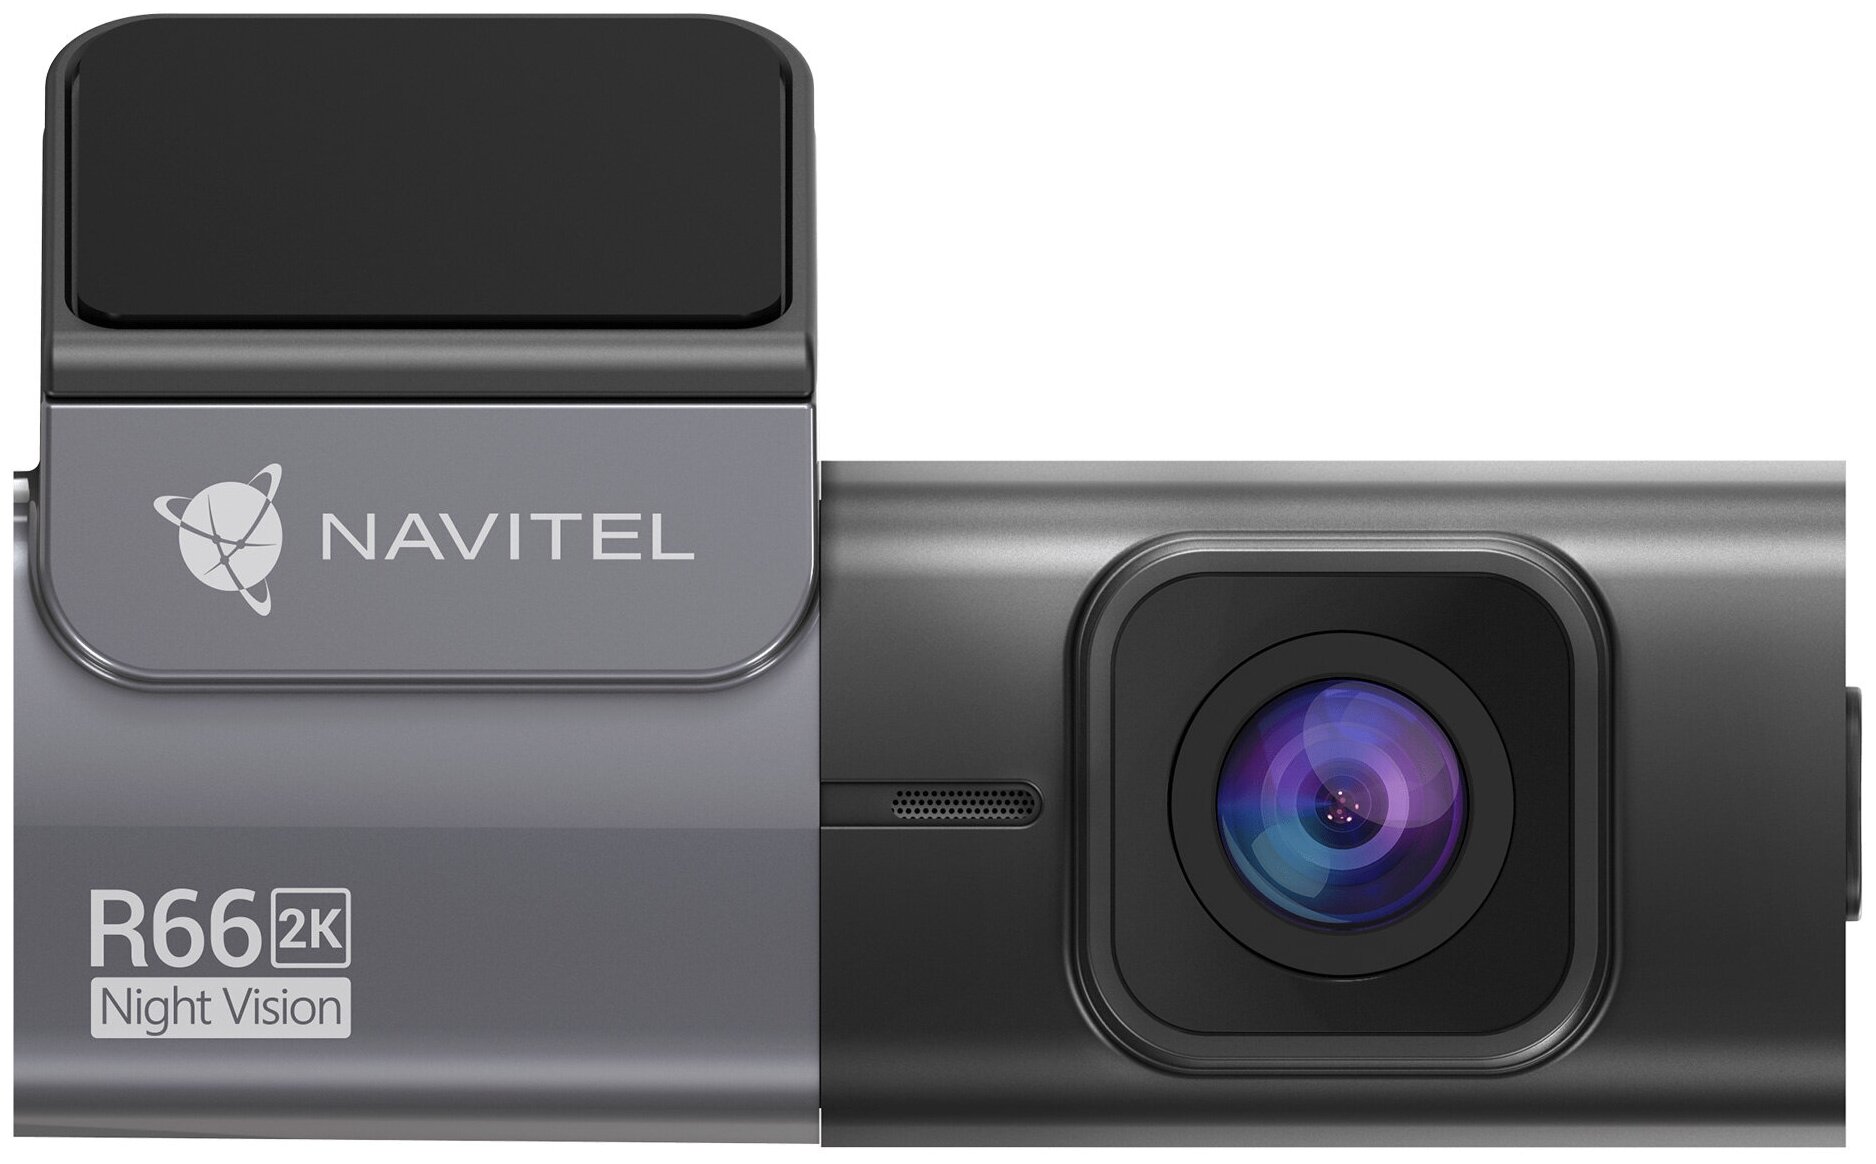 видеорегистратор navitel r480 2k черный 1440x2560 1440p 160гр Видеорегистратор Navitel R66 2K черный